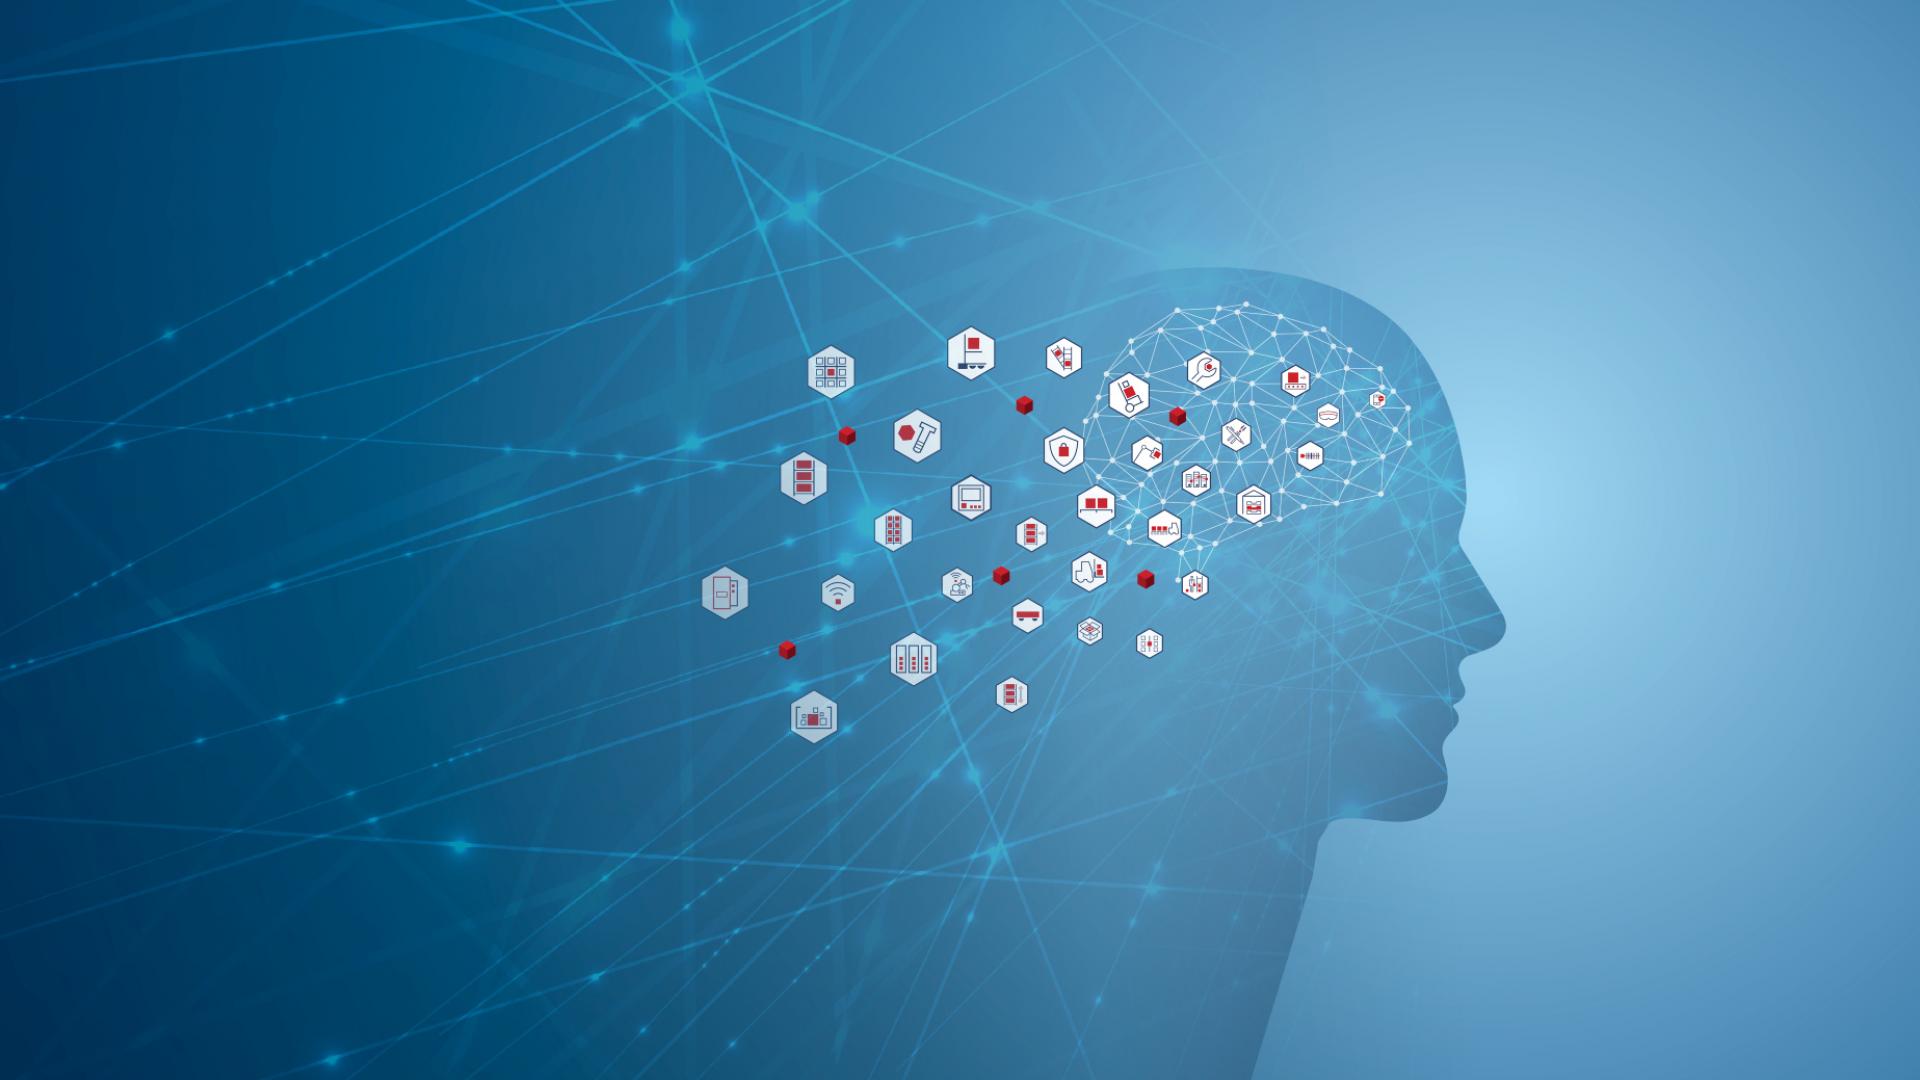 Headerbild viastore Glossar, menschliche Silhouette auf blauem Hintergrund mit Icons, die aus Gehirn fliegen